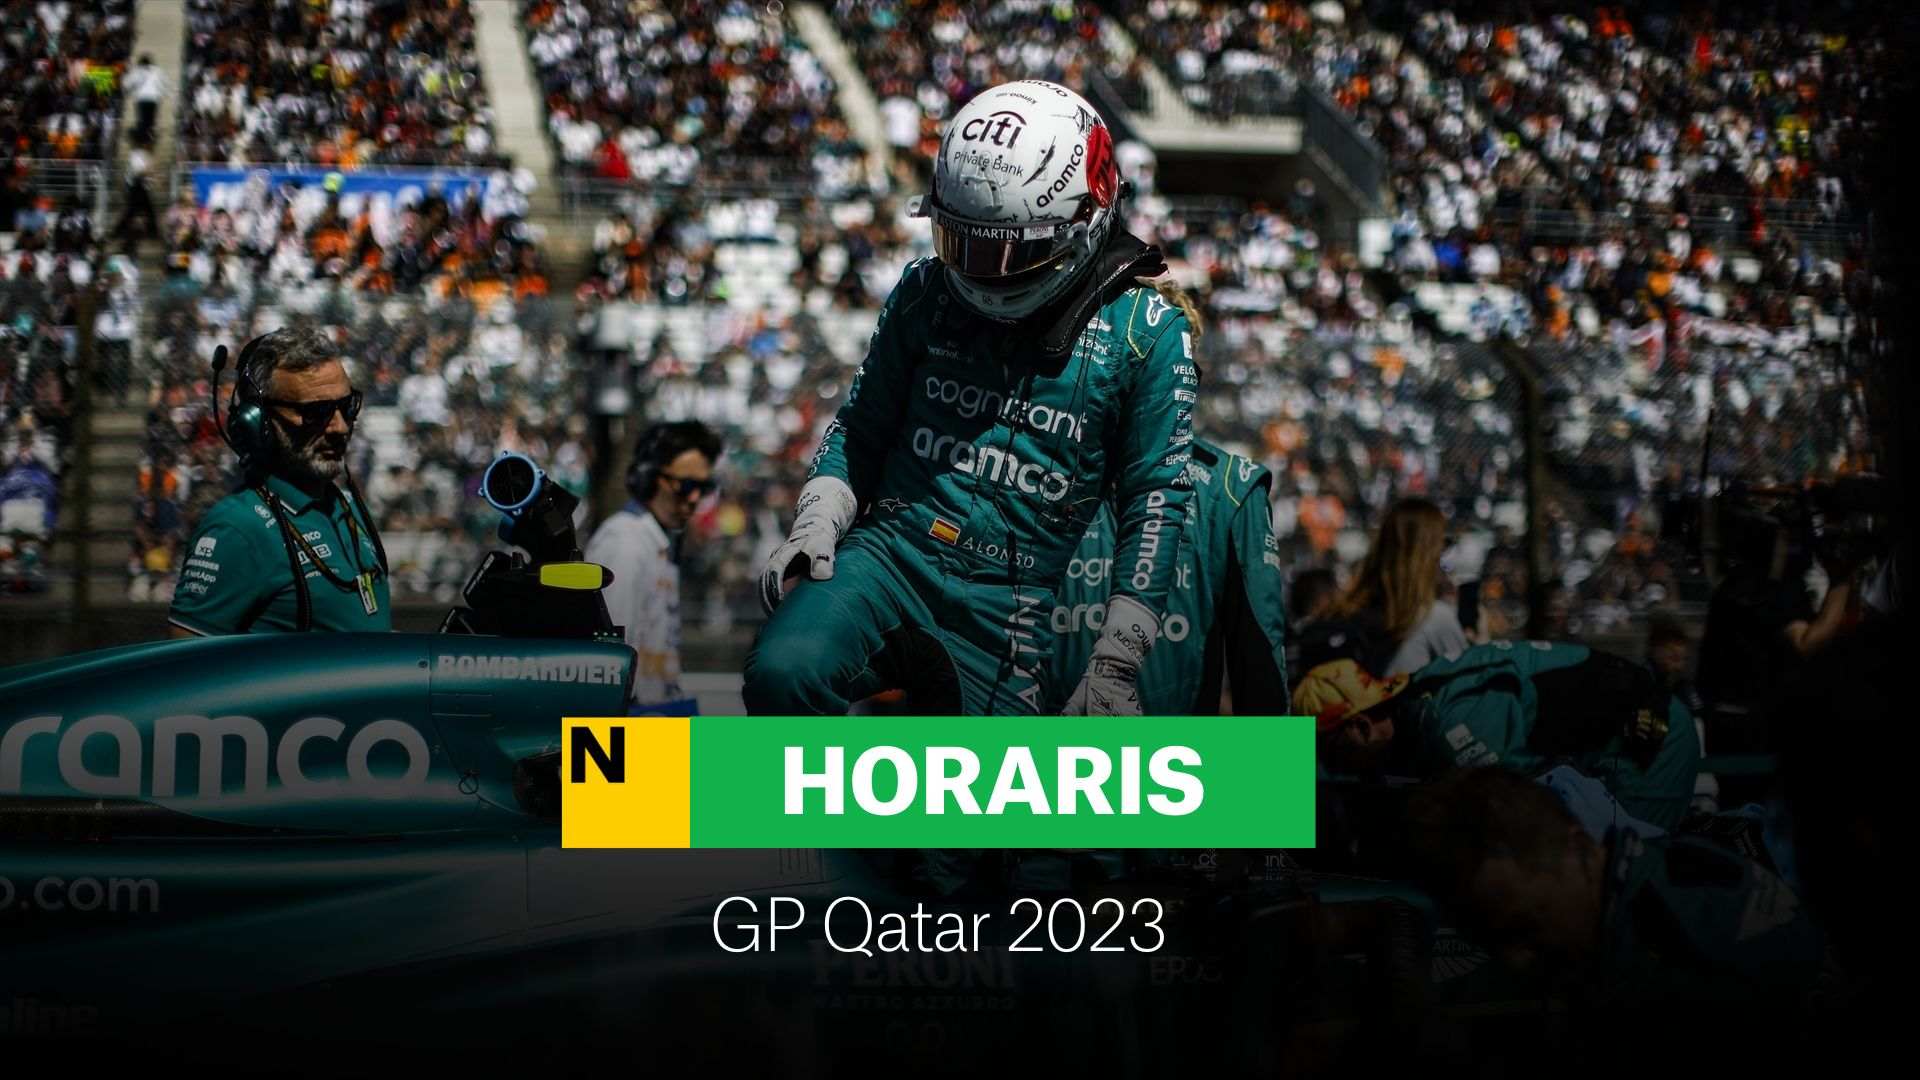 F1 GP Qatar 2023: Horario de los entrenamientos, clasificación y carrera con Alonso y Sainz